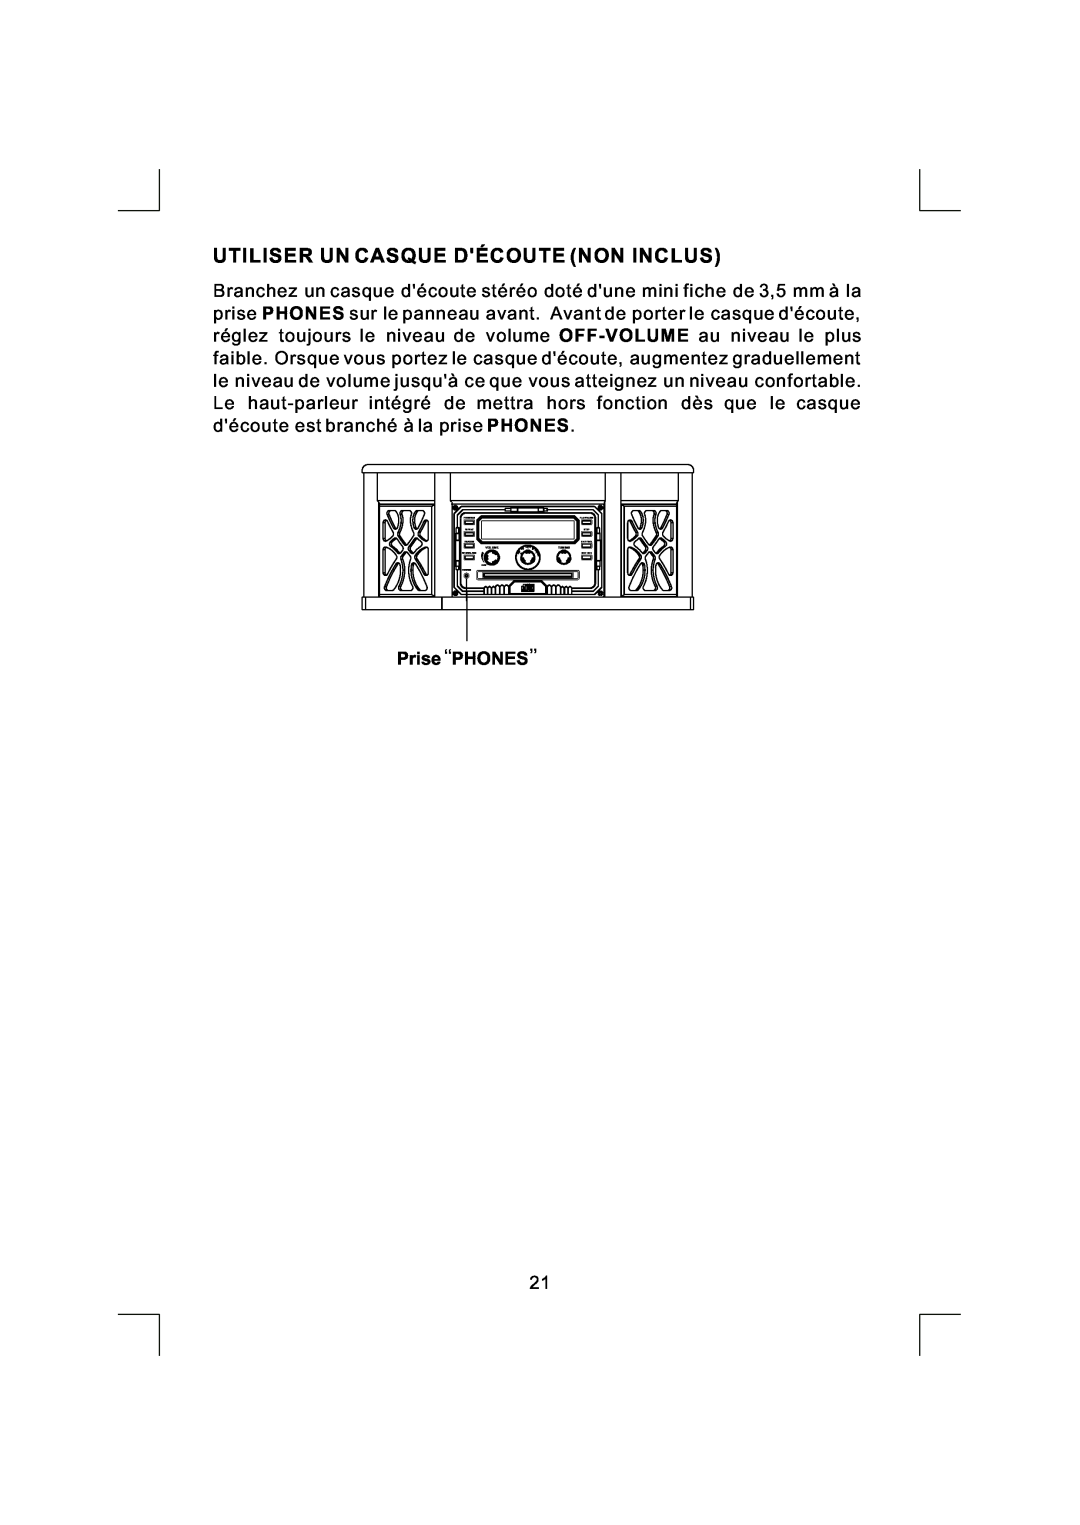 Emerson NR290TTC owner manual Utiliser Un Casque Découte Non Inclus, Prise, Phones 